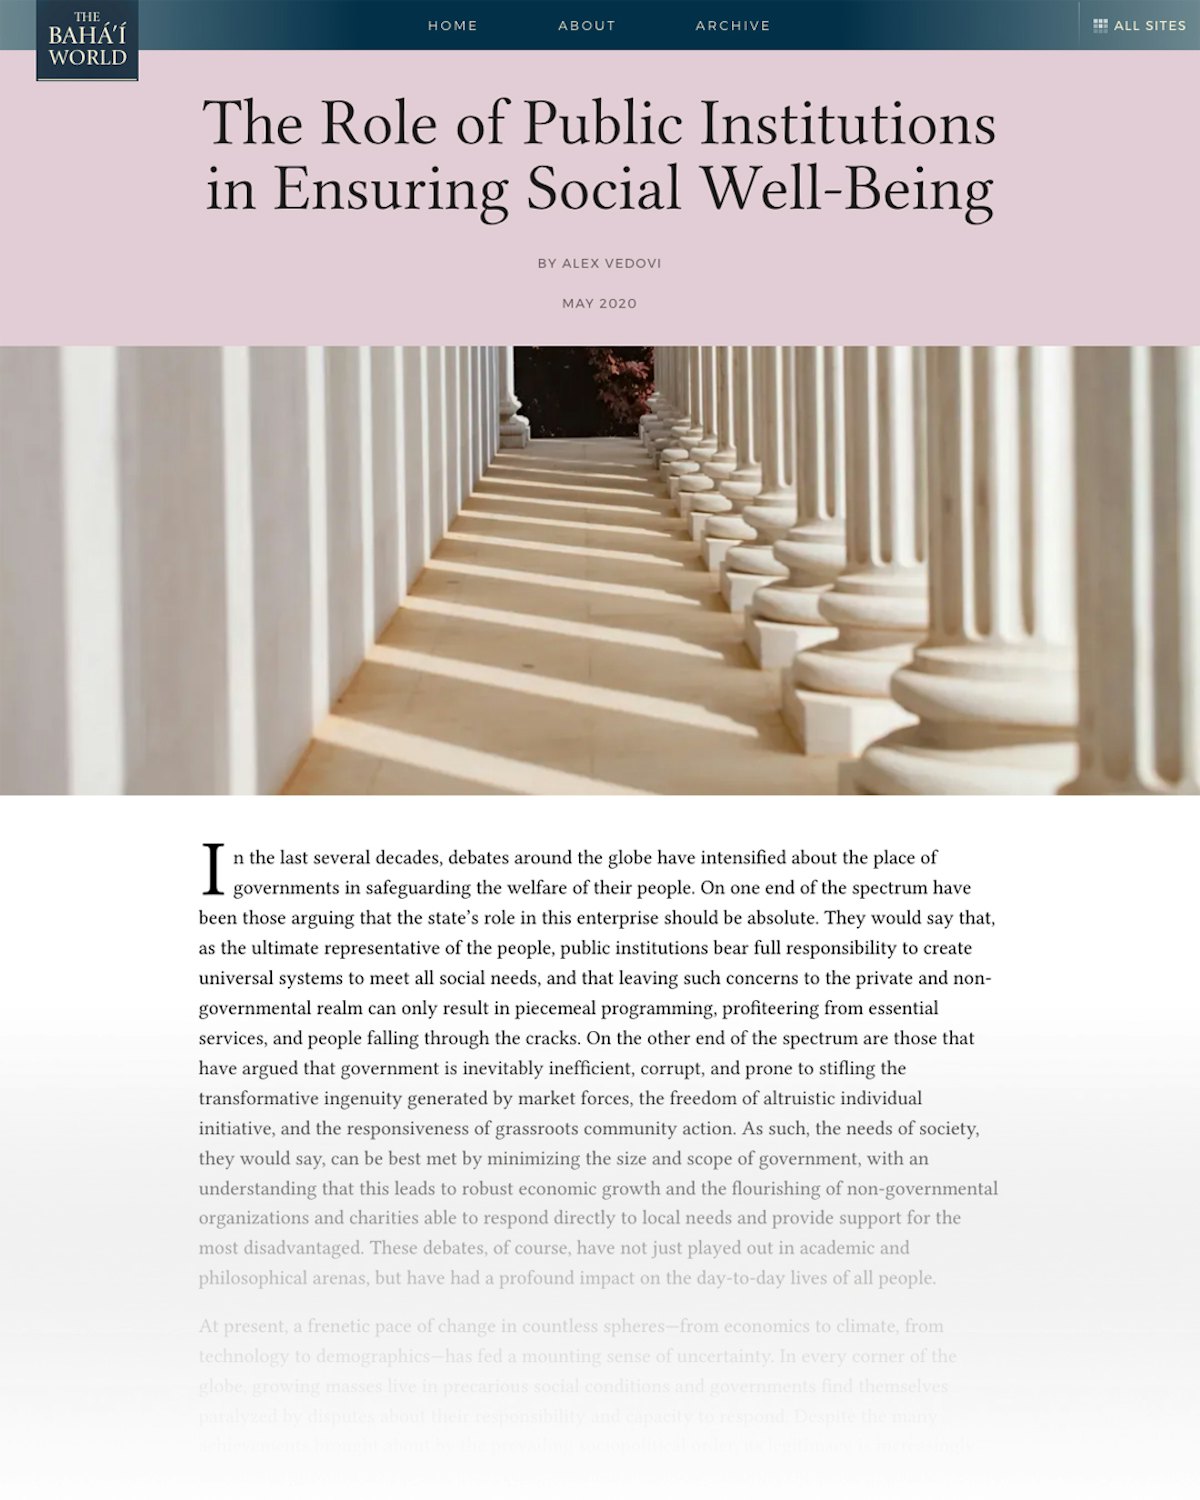 Un nouvel article sur le site web de The Baha’i World intitulé « Le rôle des institutions publiques dans la garantie du bien-être social » examine les questions relatives au rôle du gouvernement dans le bien-être social.